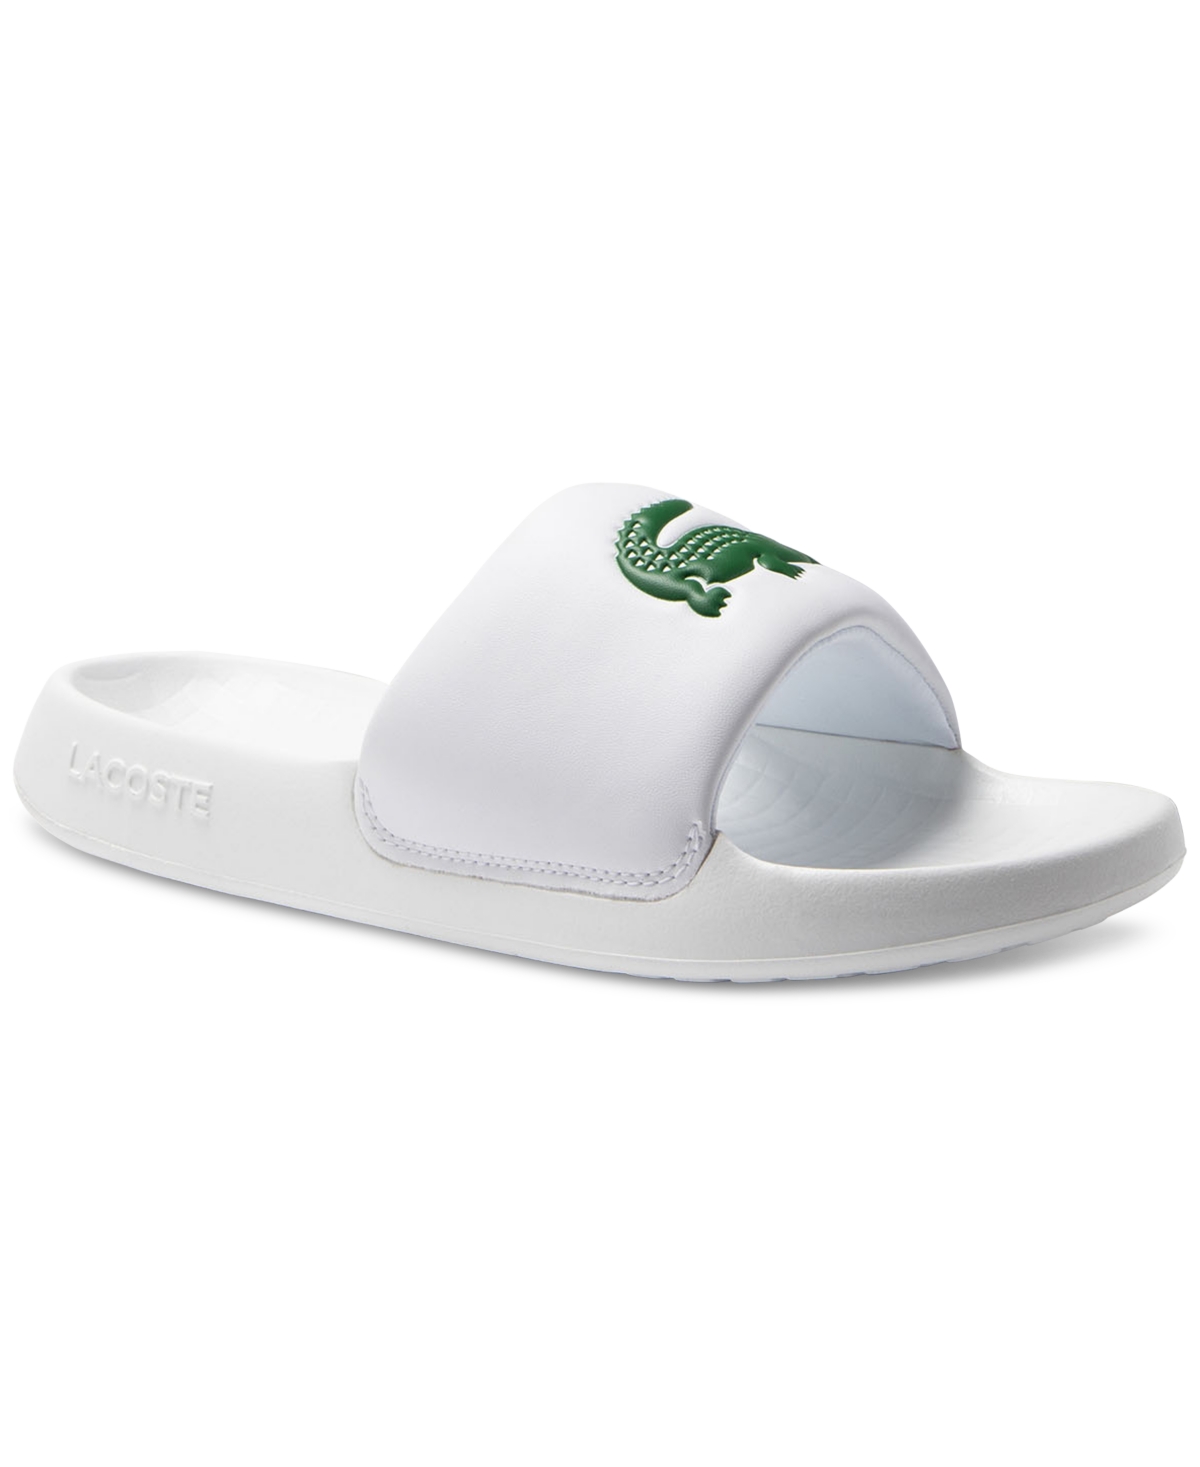 Lacoste Men's Croco 1.0 Slip-on Slide Sandals In White,green